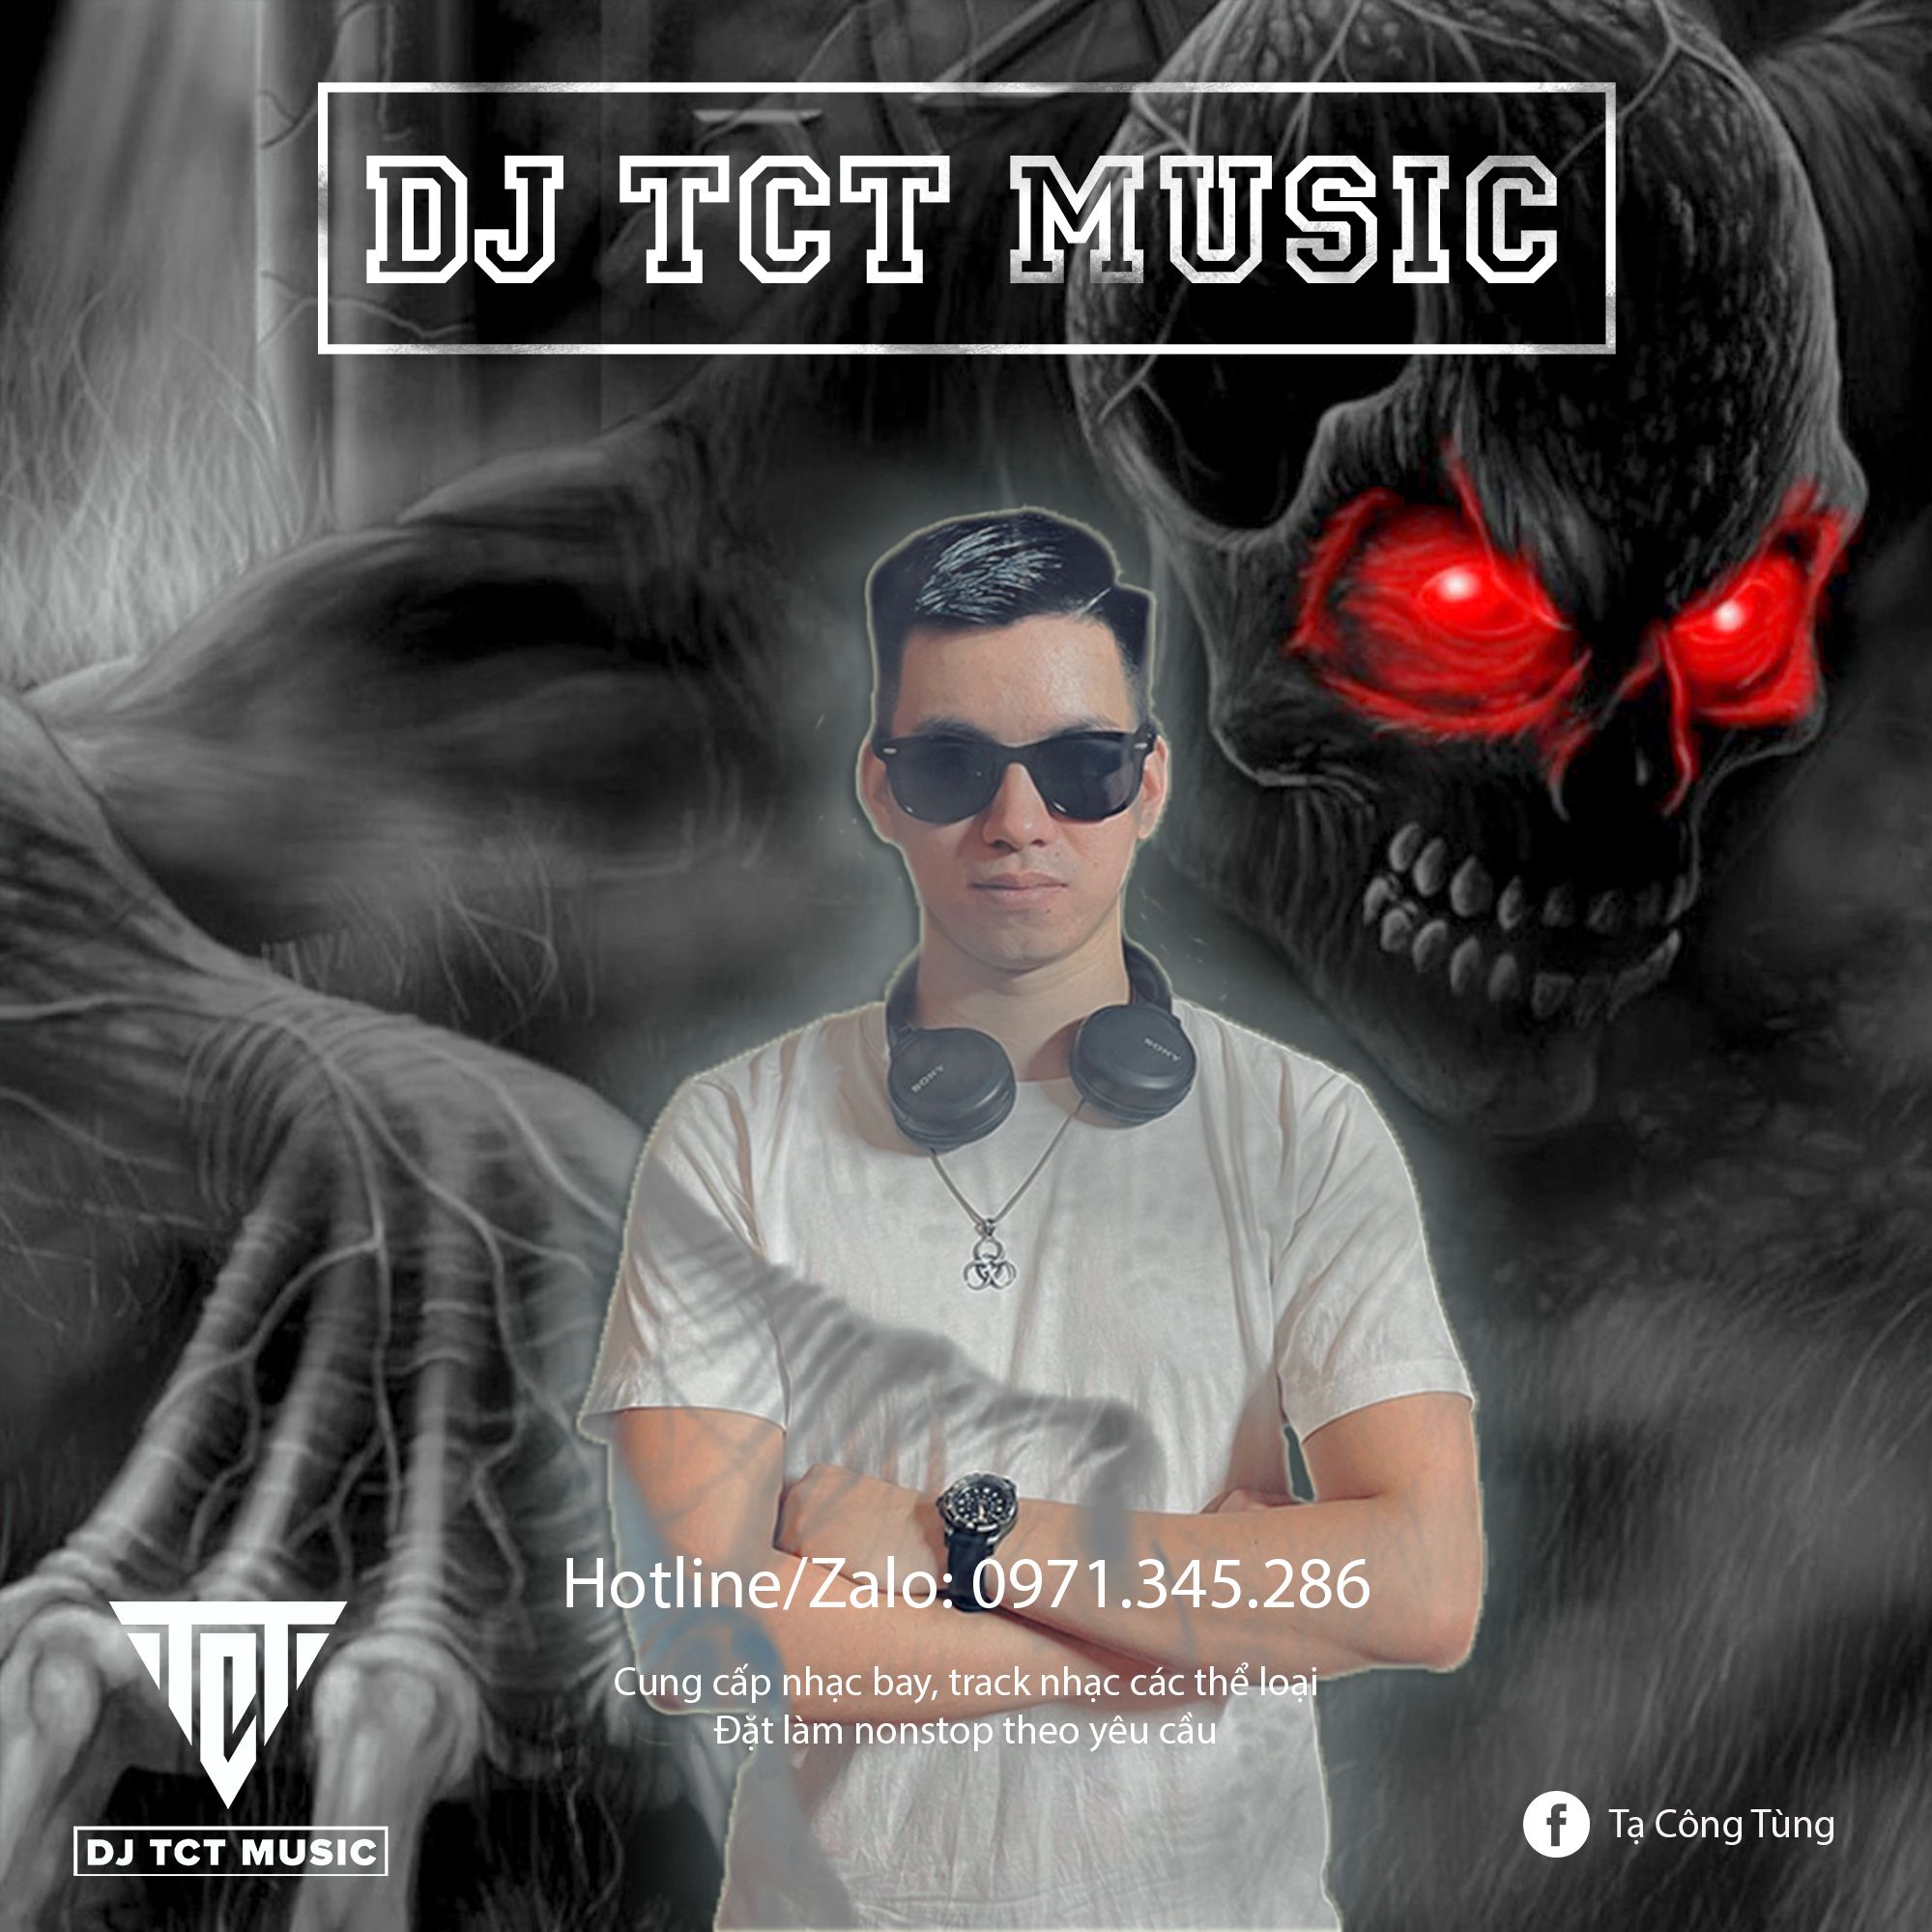 Download NONSTOP VIỆT MIX LỜI NGUYỀN 2022 .WAV / DJ TCT MUSIC 0971345286 / TRACK NHẠC BAY PHÒNG HAY NHẤT 2022